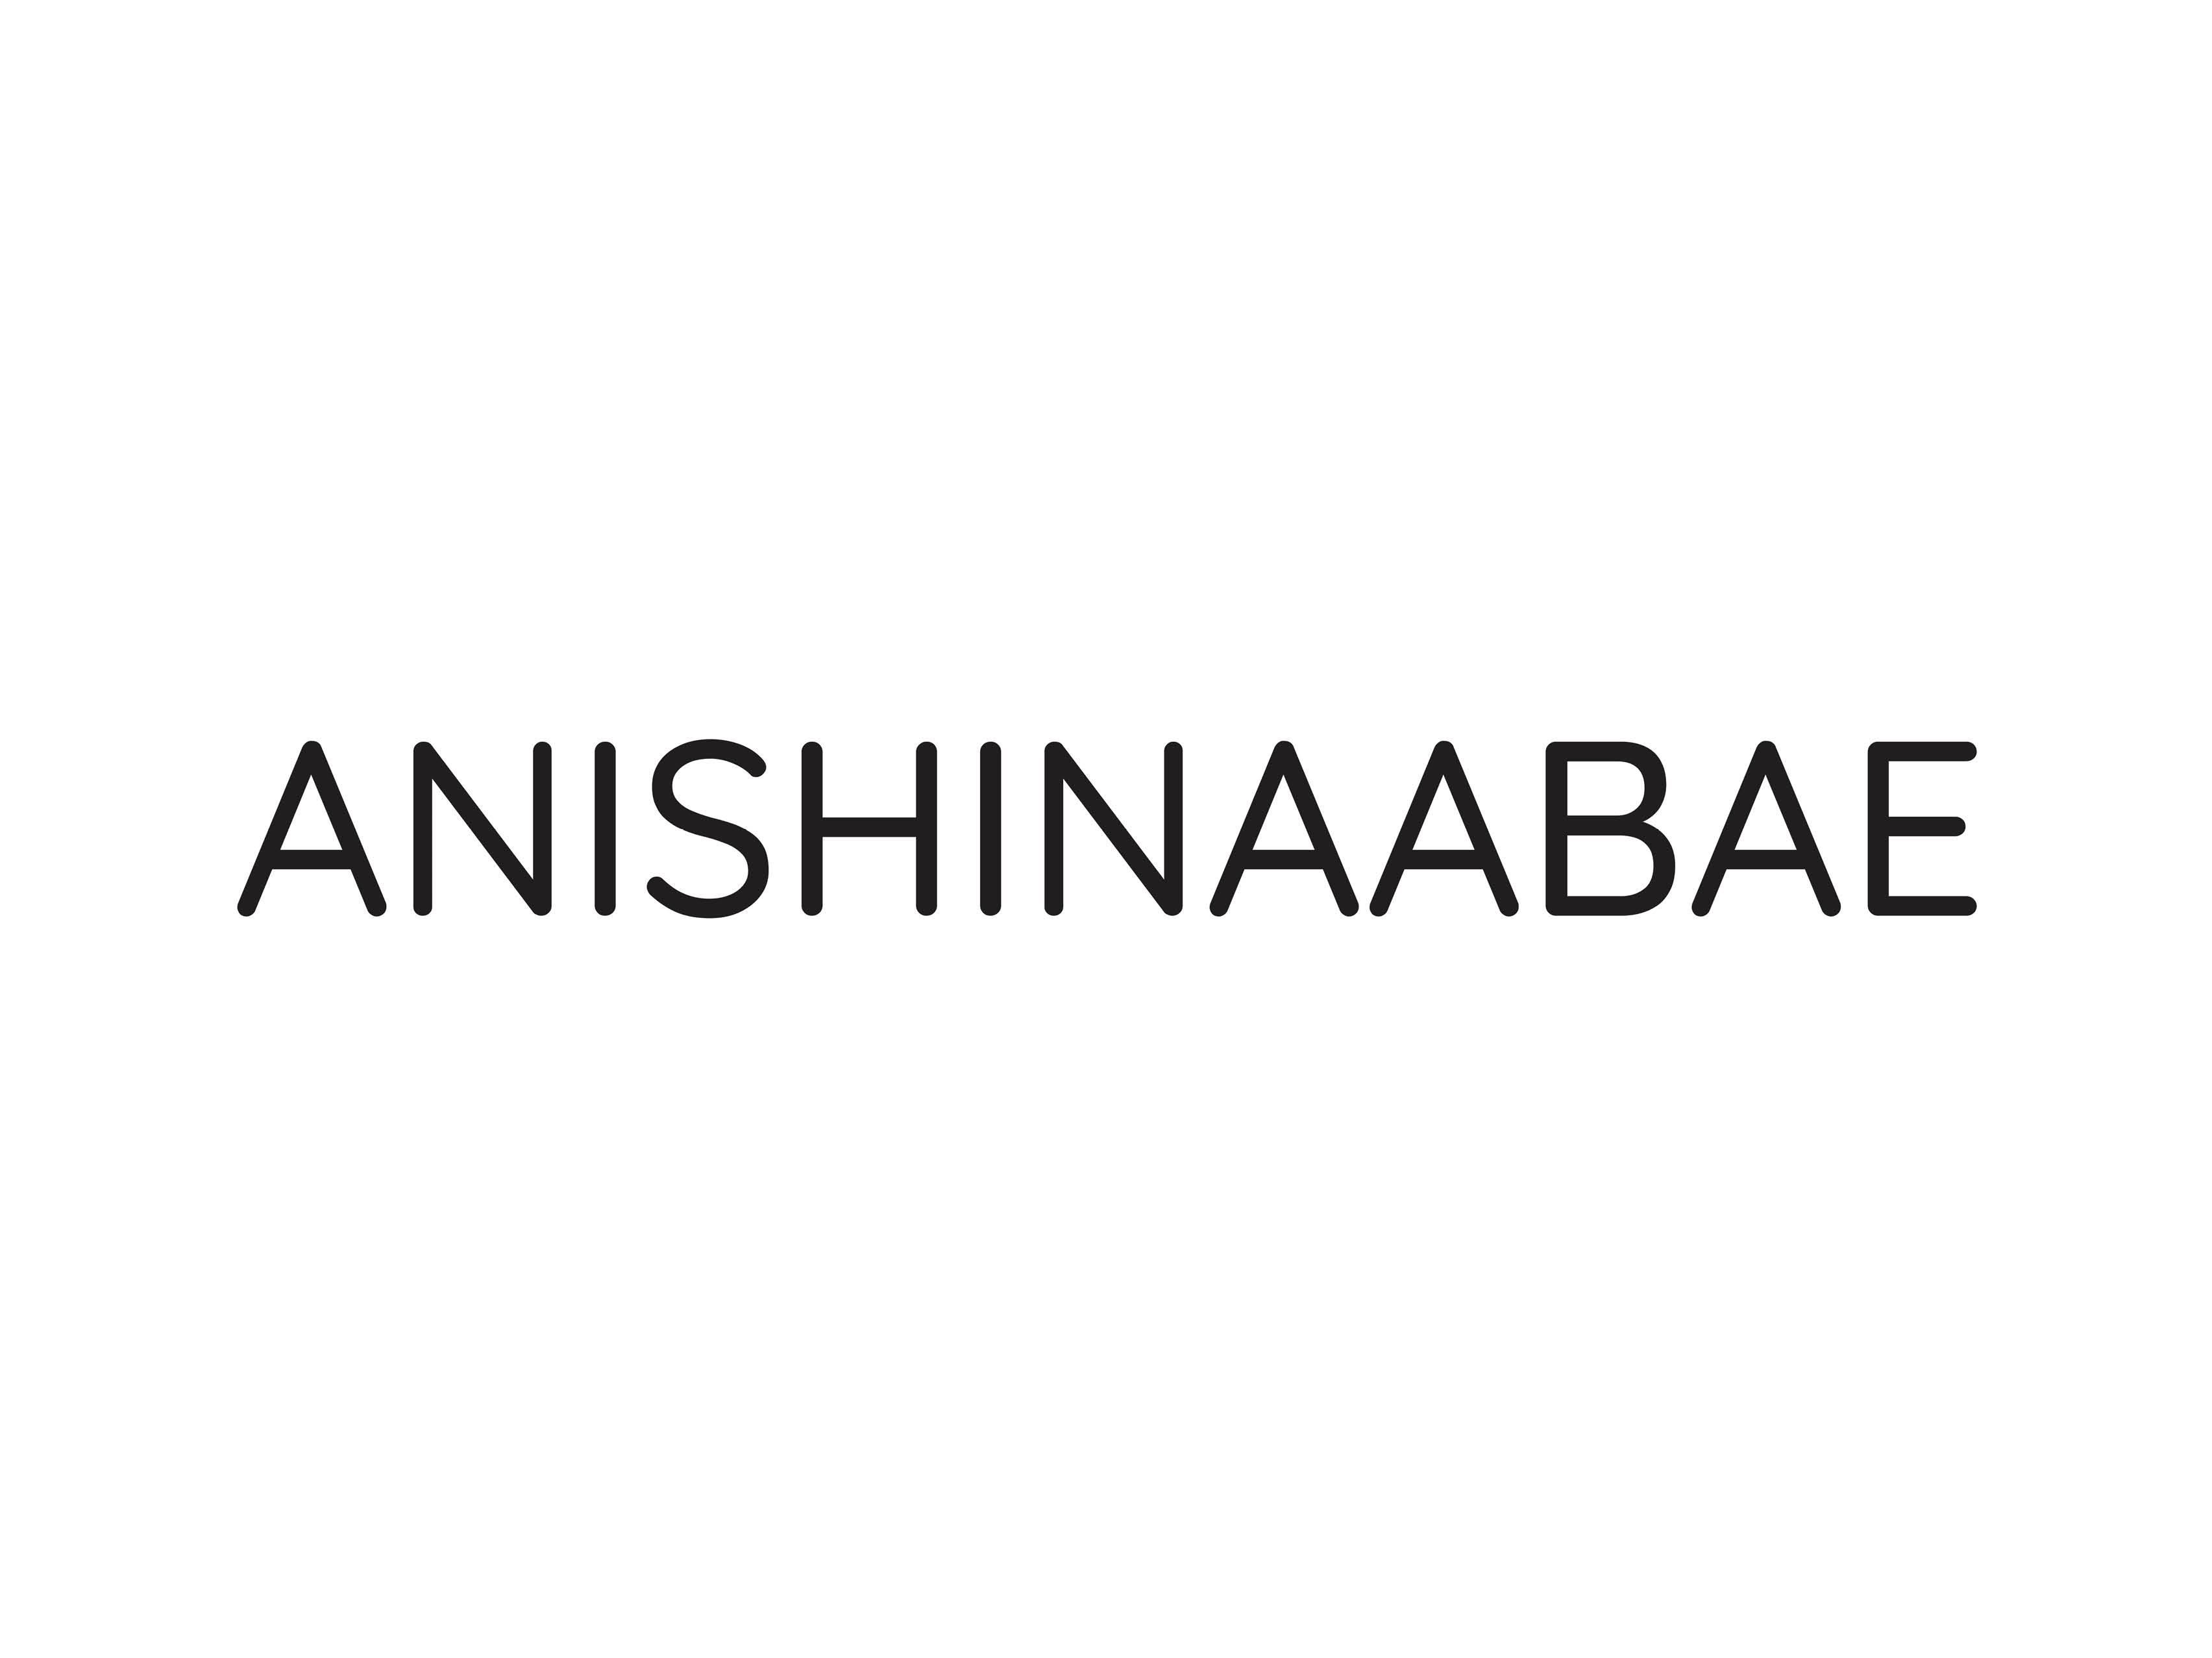 Anishinaabae logo